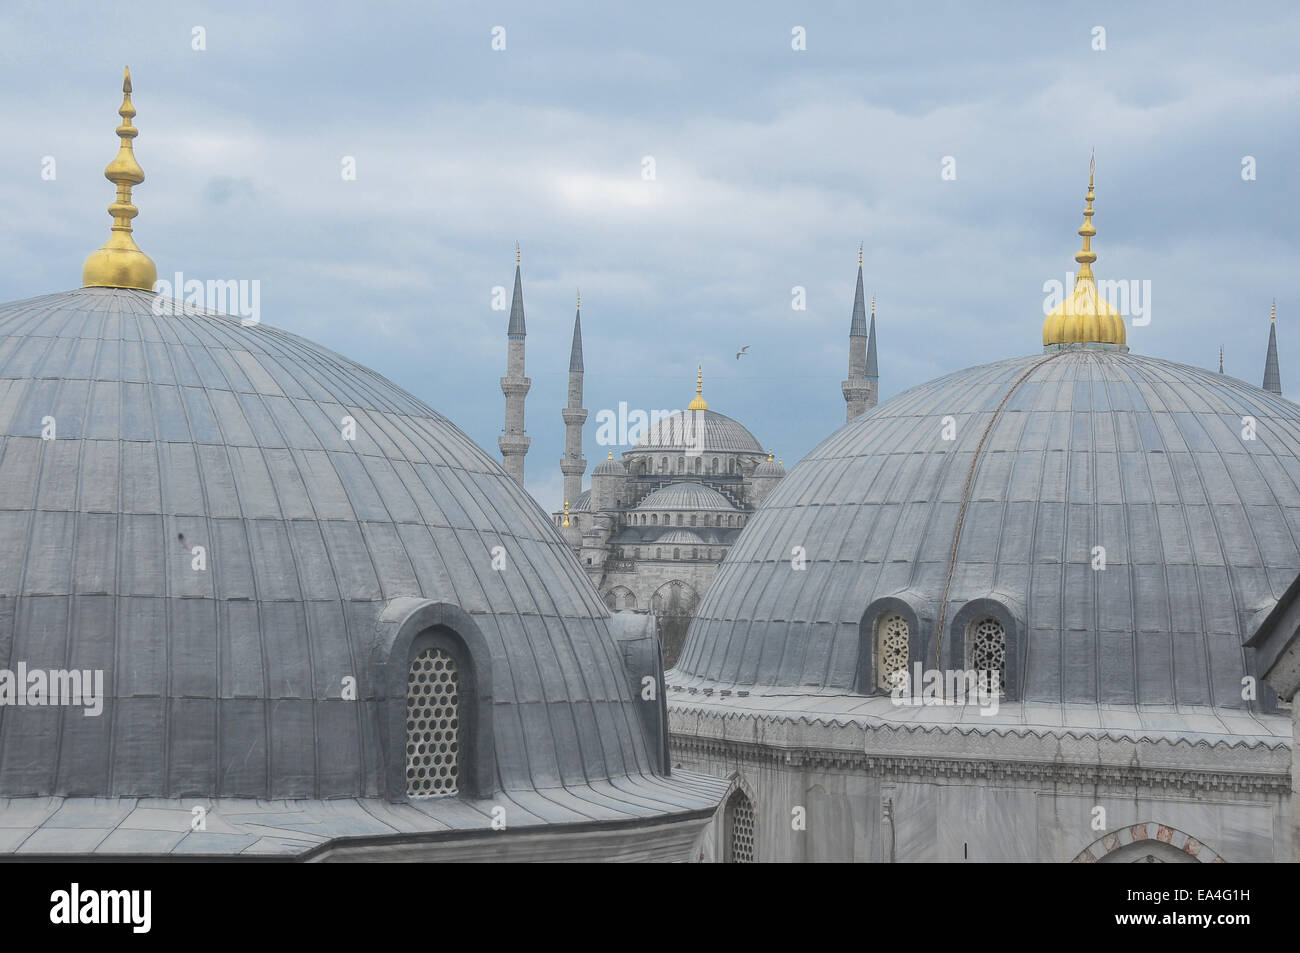 1 mars 2011 - Istanbul, Turquie -la Mosquée bleue vue depuis une fenêtre dans la basilique Sainte-Sophie. La mosquée bleue est visible dans l'isolation partiellechauffage Banque D'Images